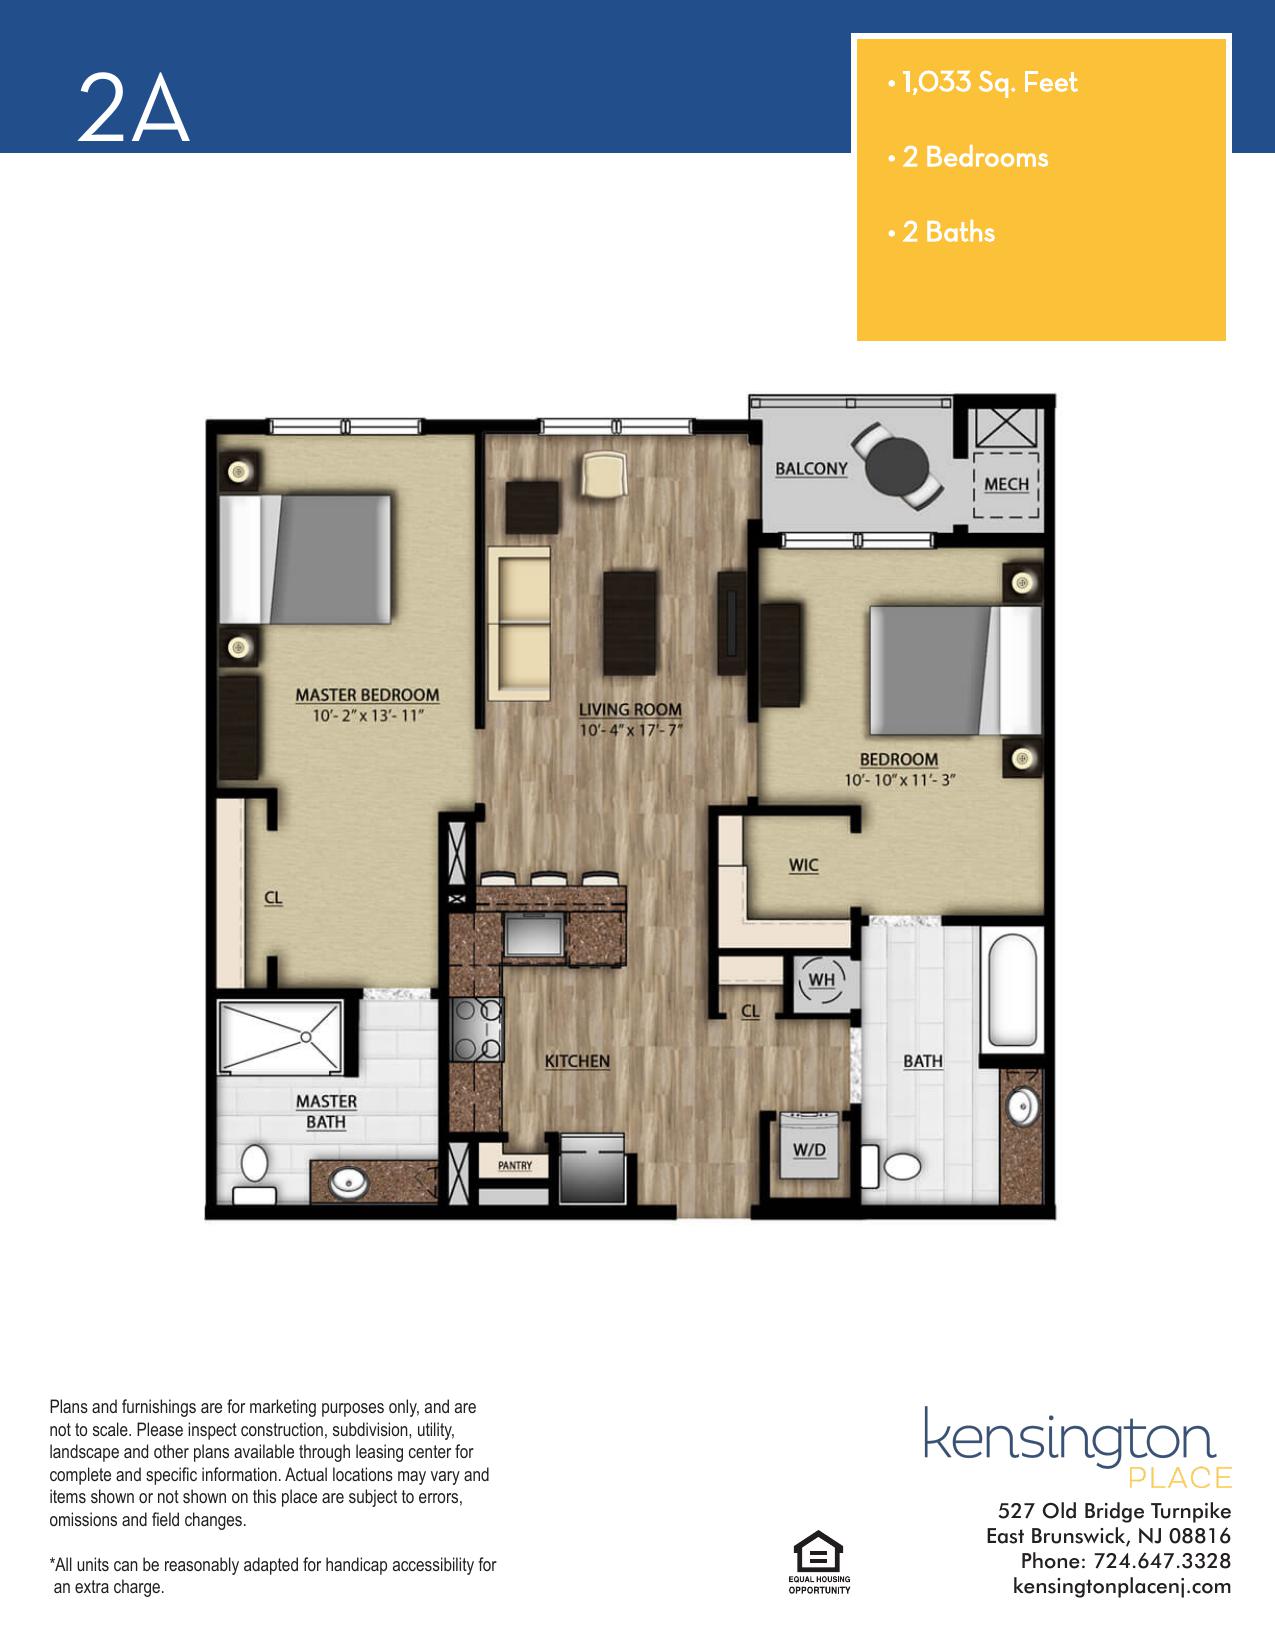 Kensington Place Apartment Floor Plan 2A